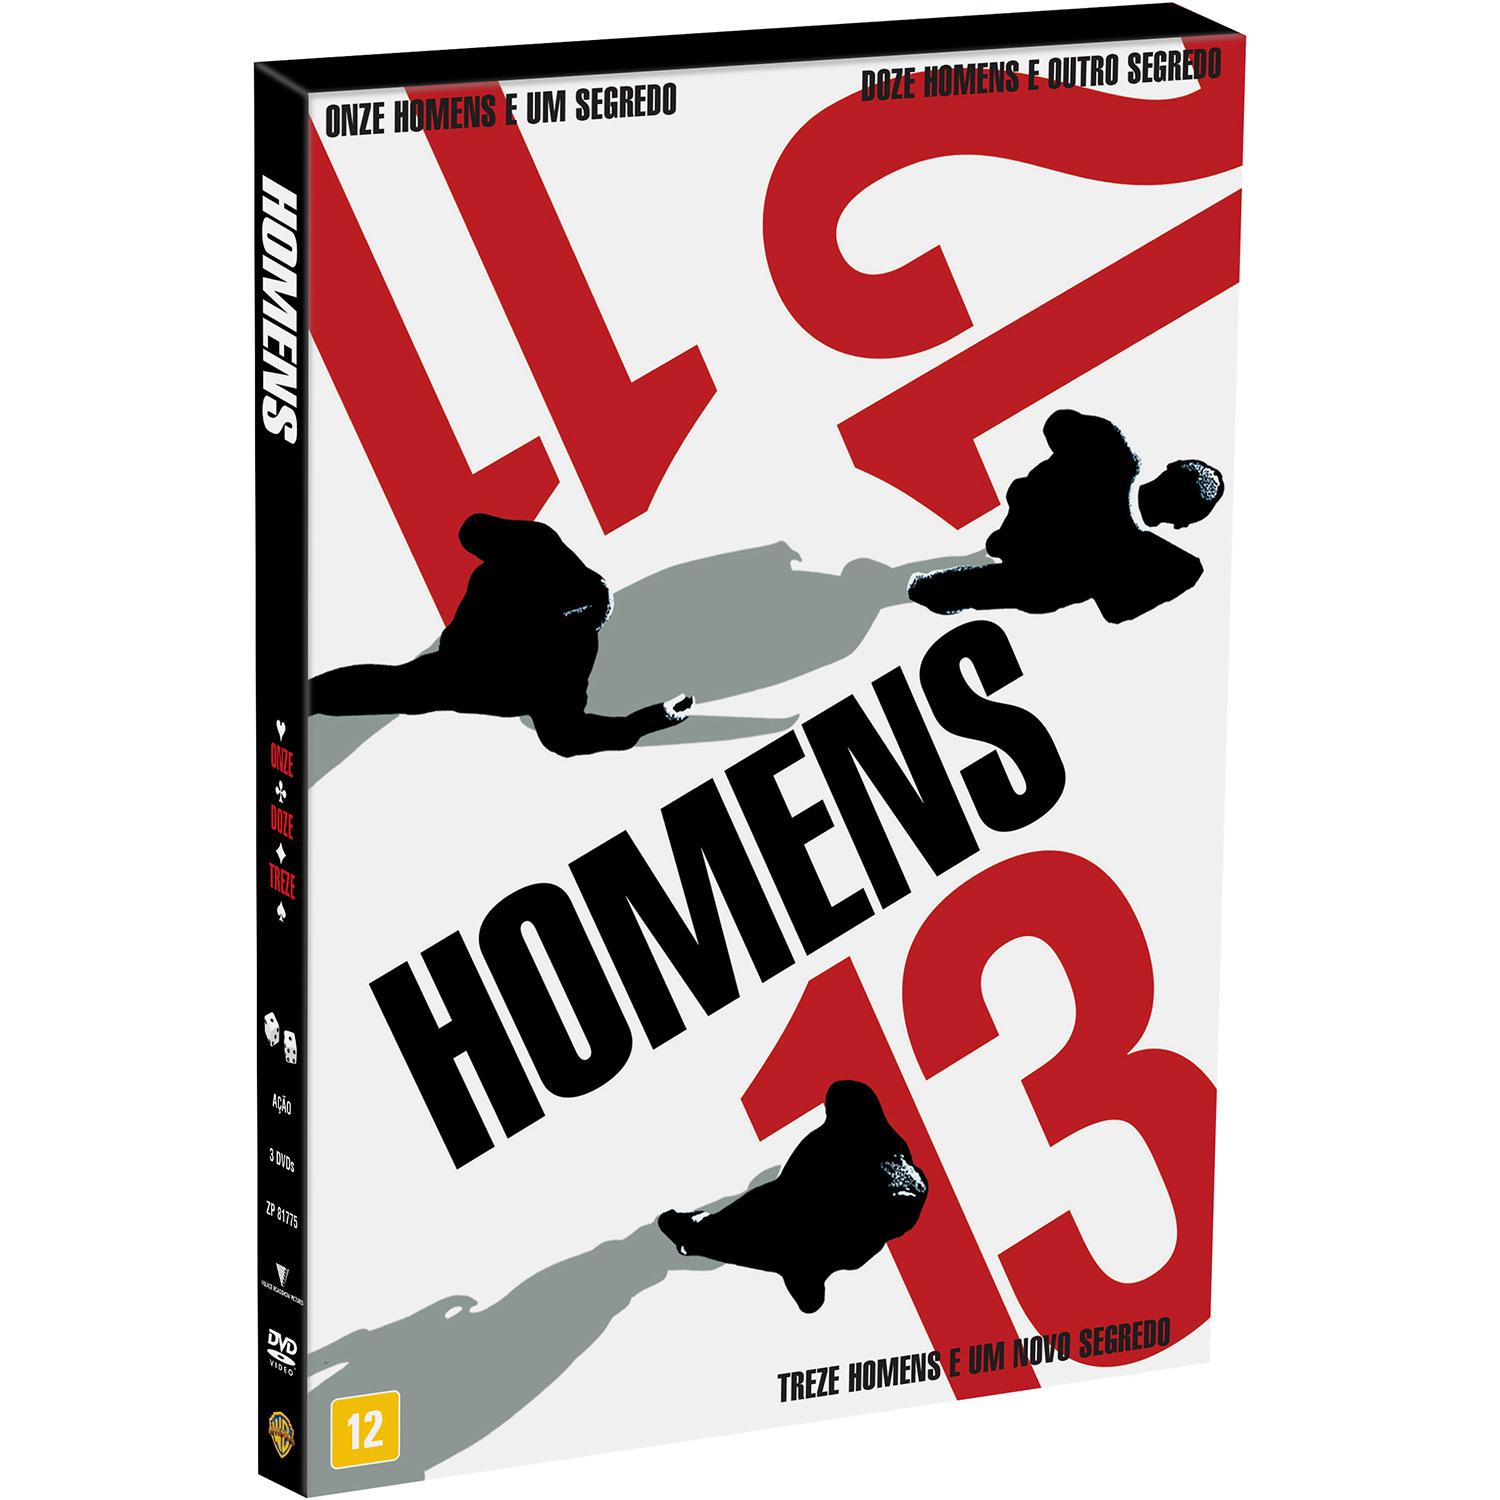 DVD Coleção Onze, Doze, Treze Homens (3 Discos) é bom? Vale a pena?